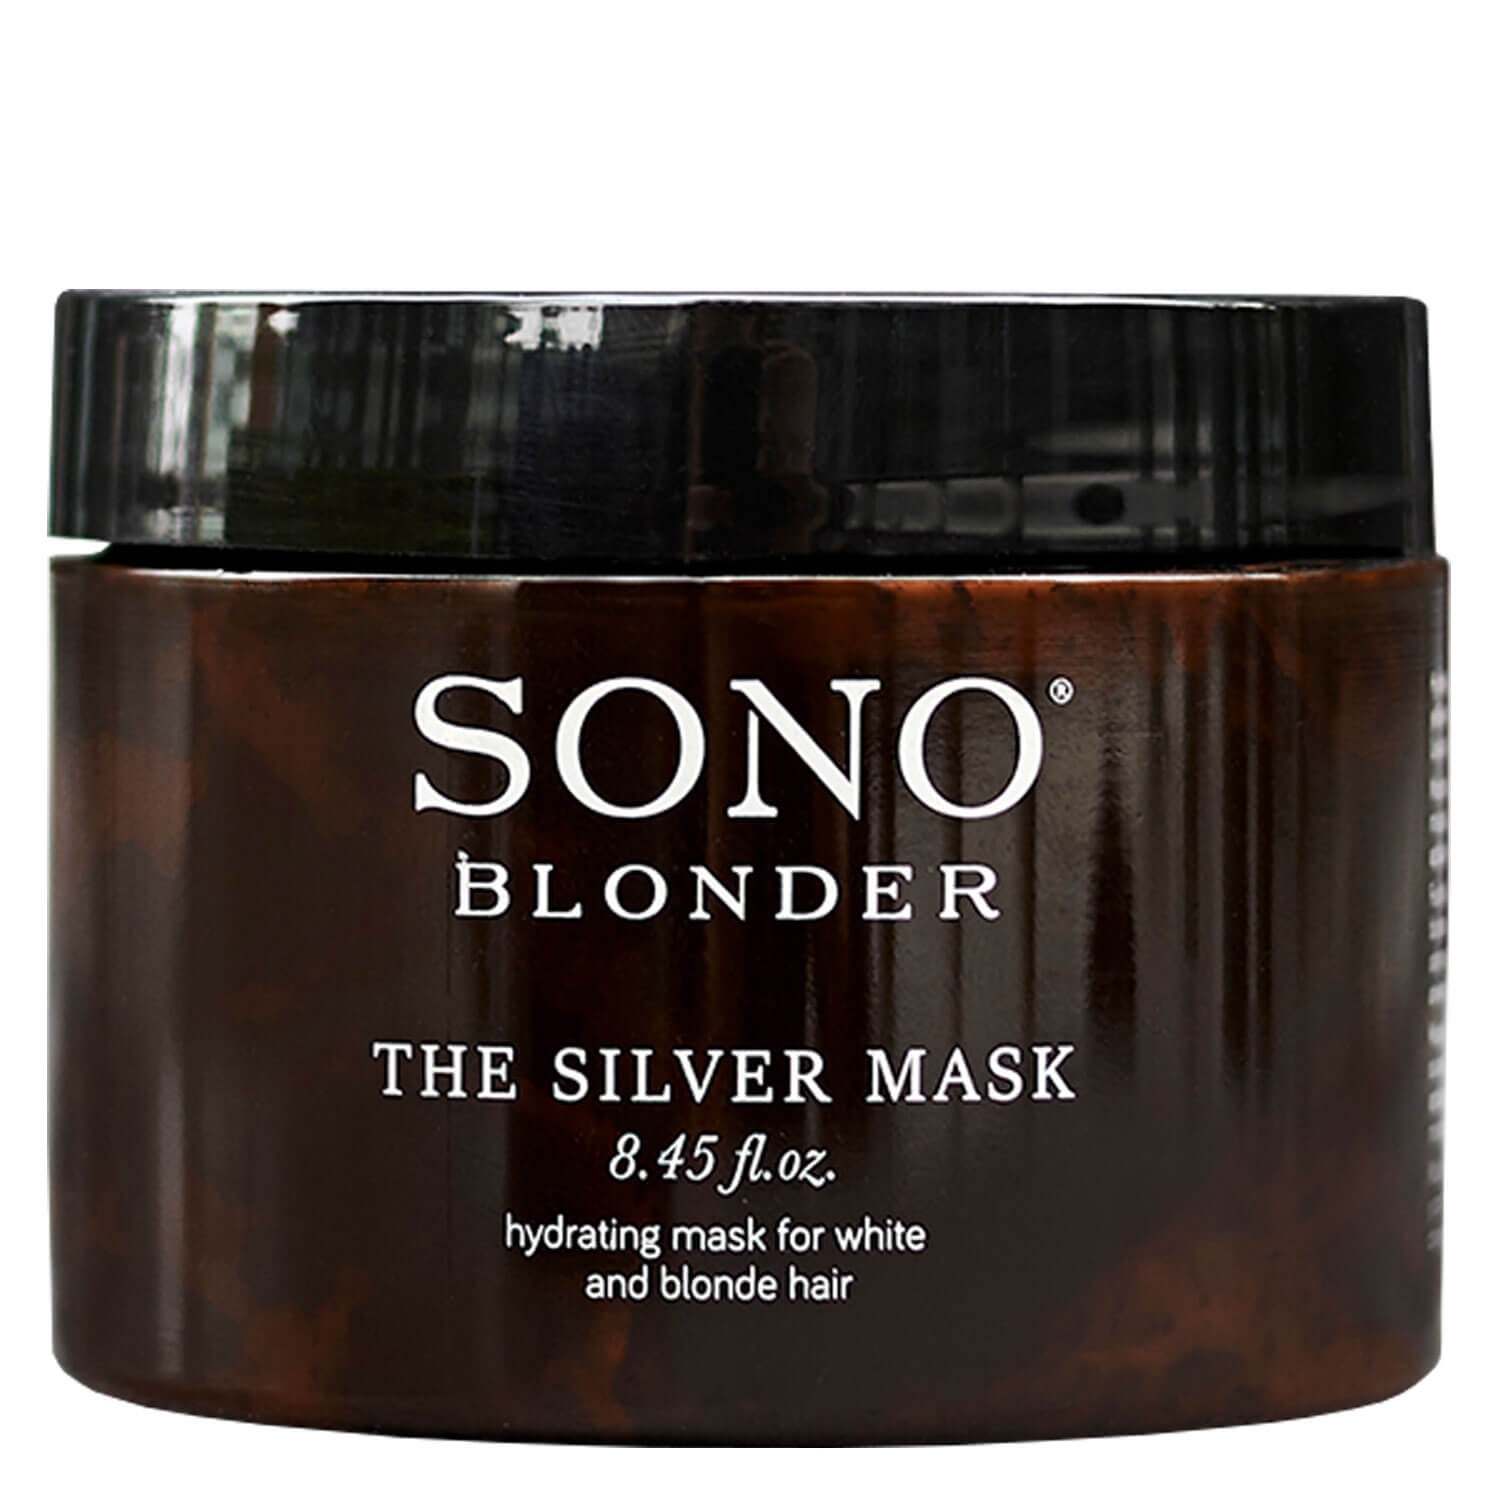 Produktbild von SONO Blonder - The Silver Mask